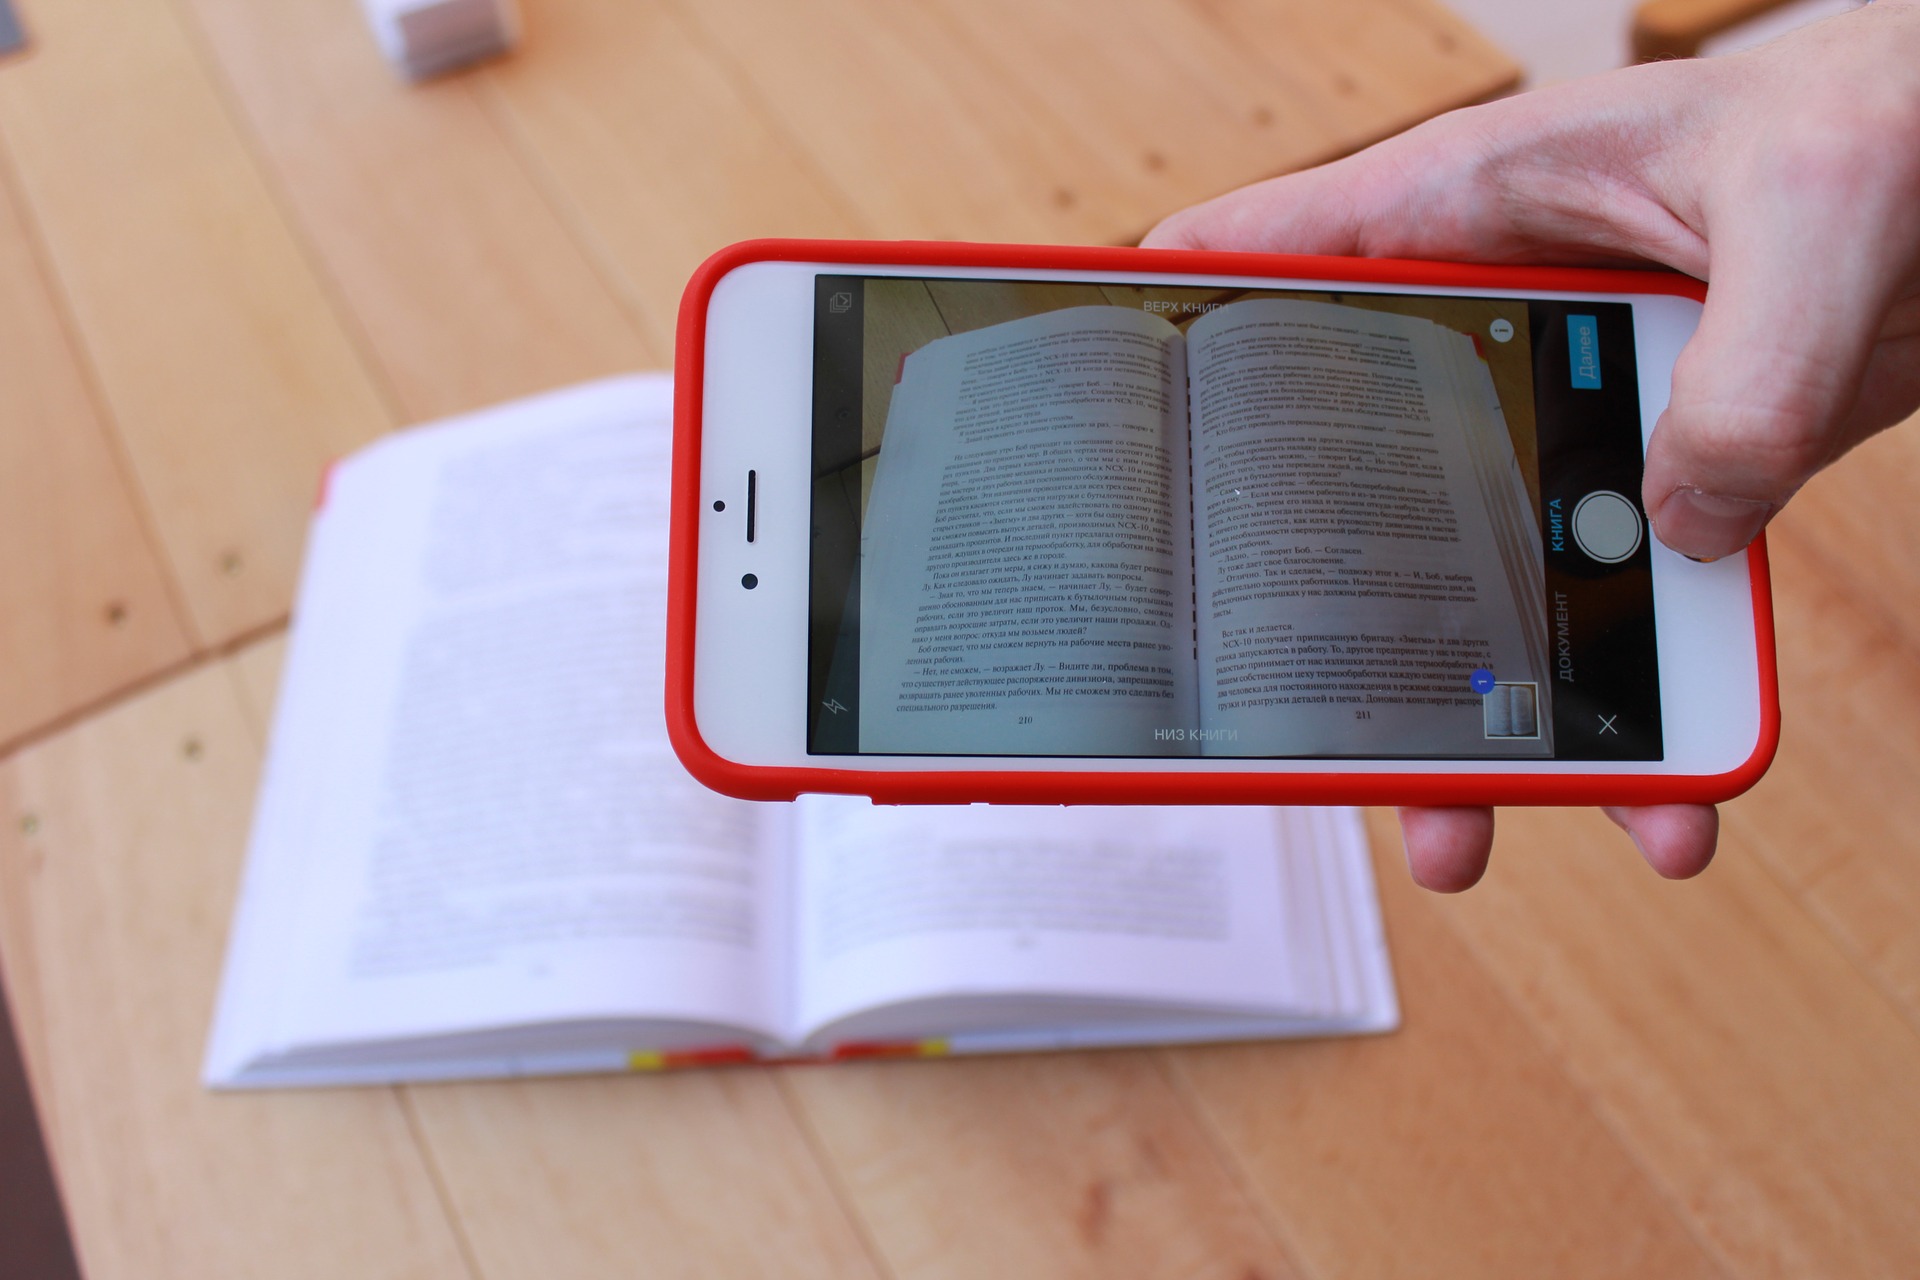 Foto: Smartphone mit Buch